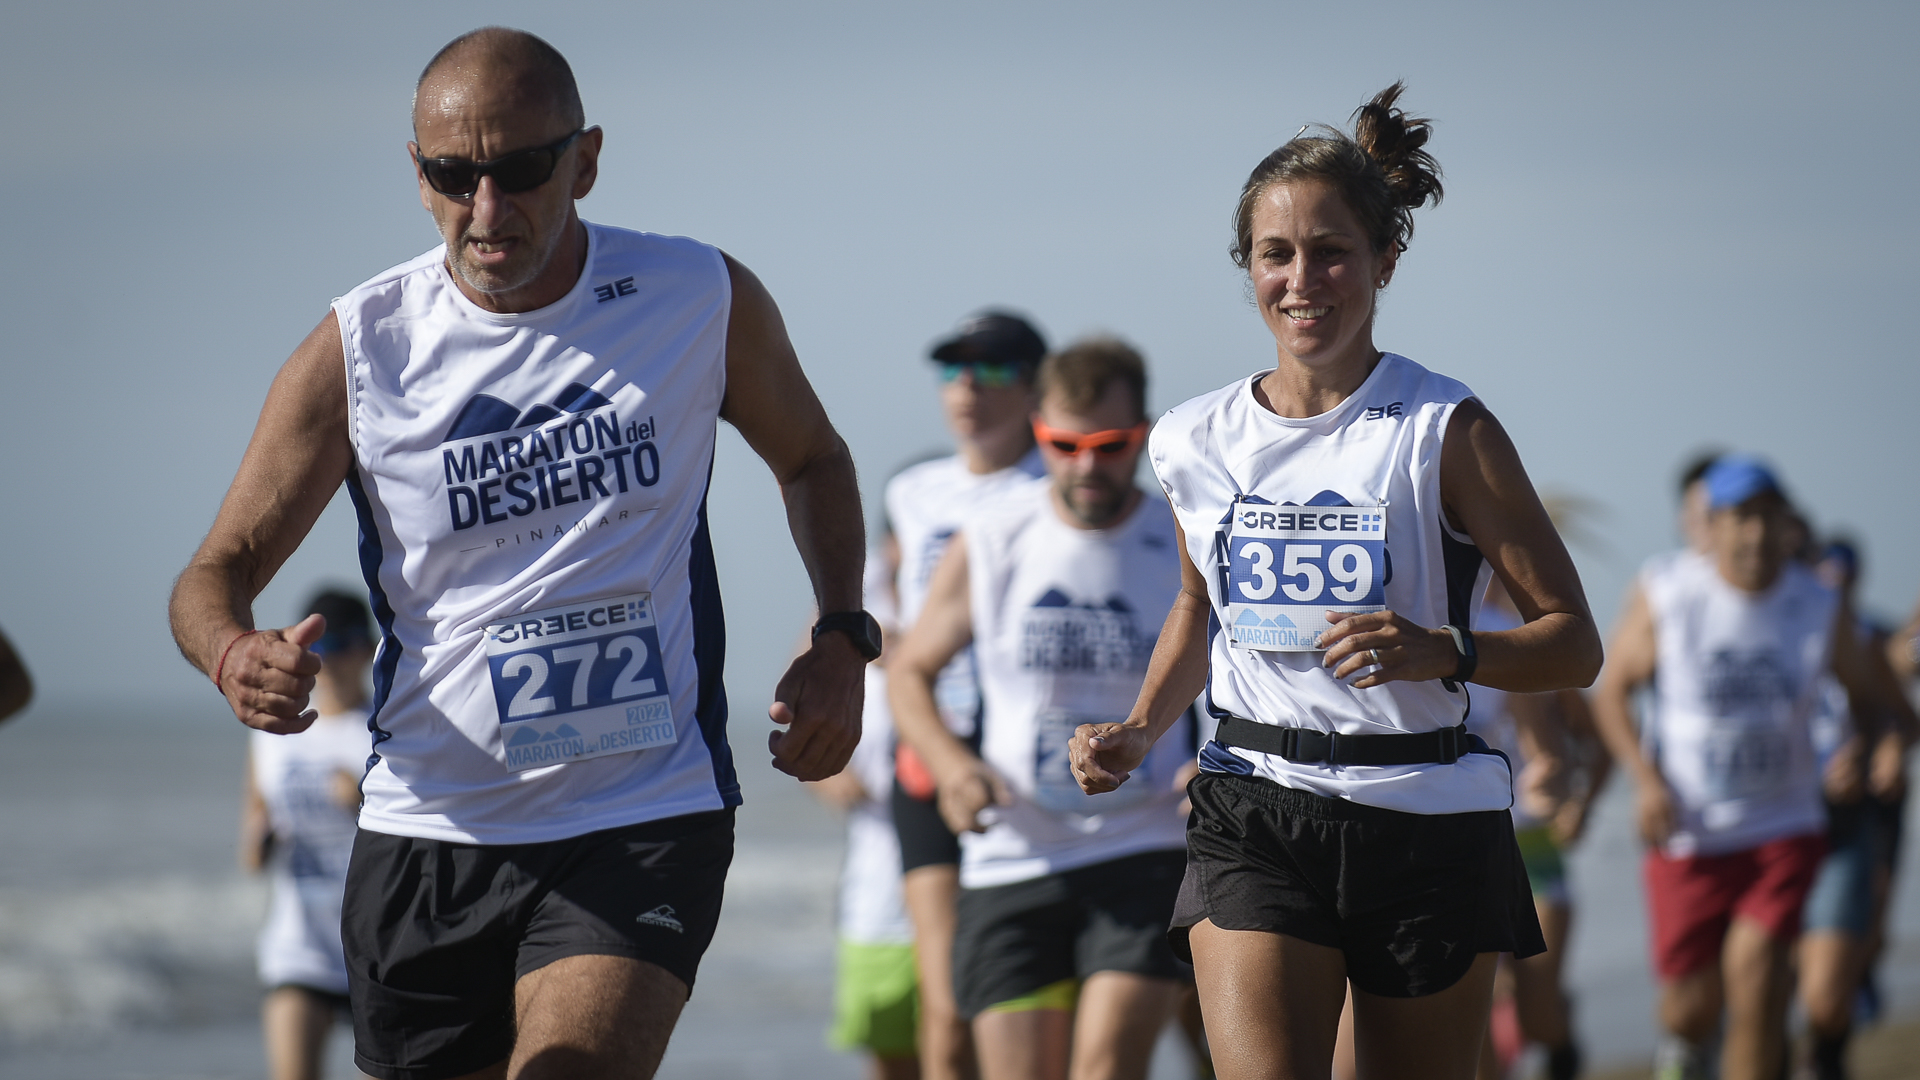 Los expertos se han centrado en muchos casos en estudiar a las personas que realizan deportes de resistencia como las ultramaratones, que son carreras más largas que los 42 kilómetros propios de la maratón